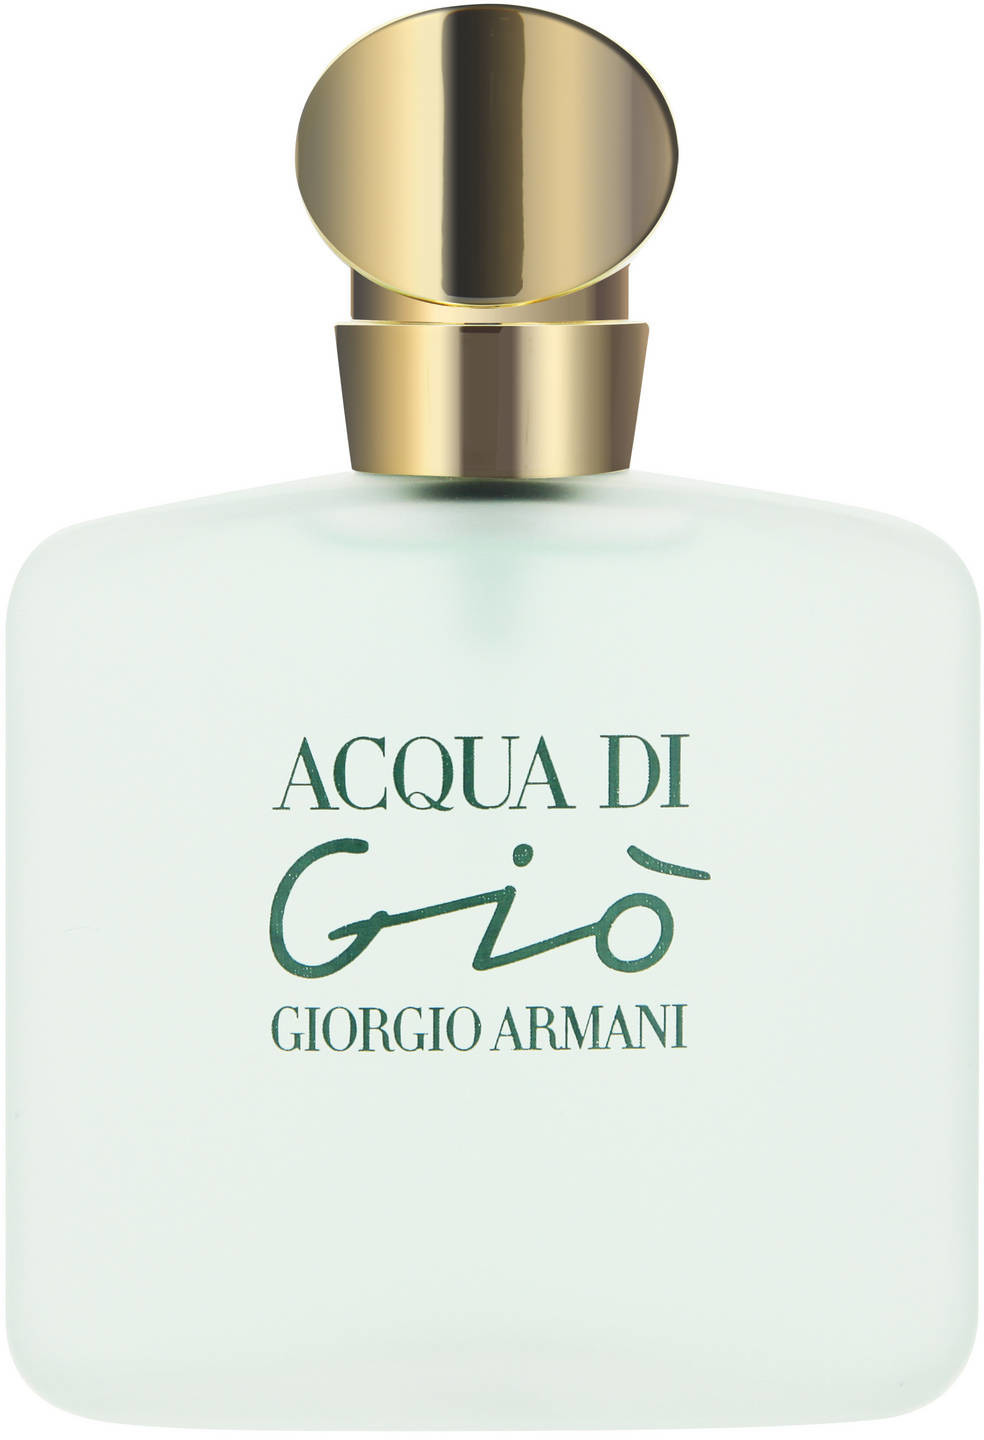 Photos - Women's Fragrance Armani Giorgio  Giorgio  Acqua di Giò Femme Eau de Toilette  (100ml)